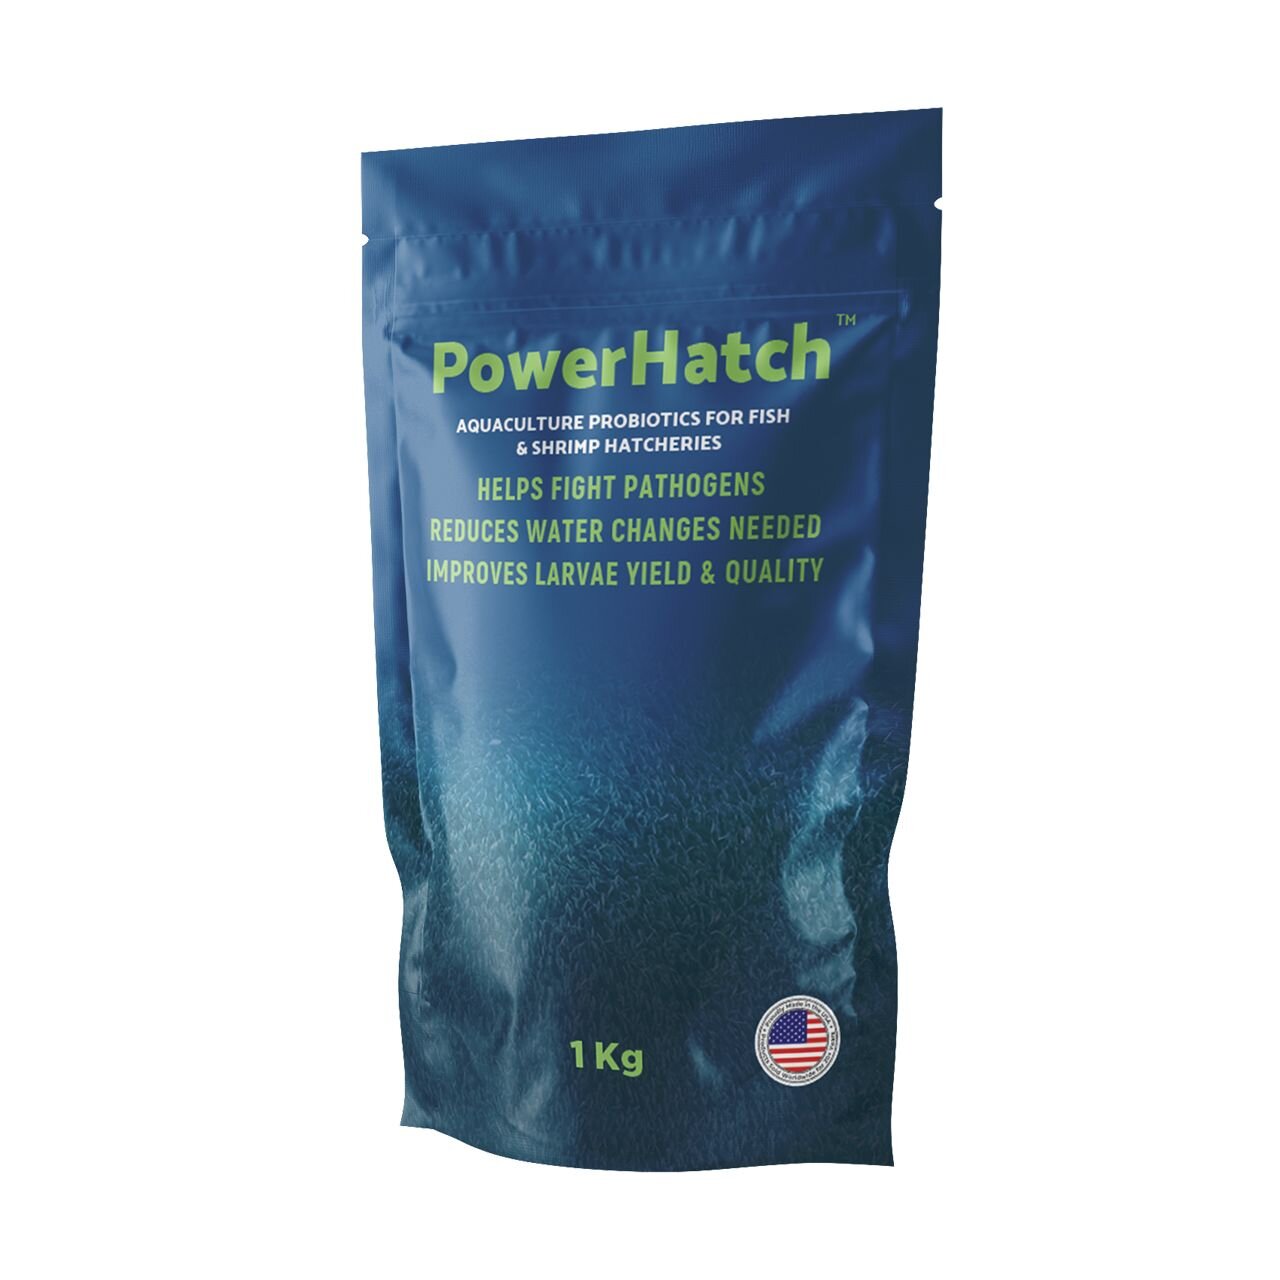 PowerHatch™ - Aquaculture probiotics for fish &amp; shrimp hatcheries